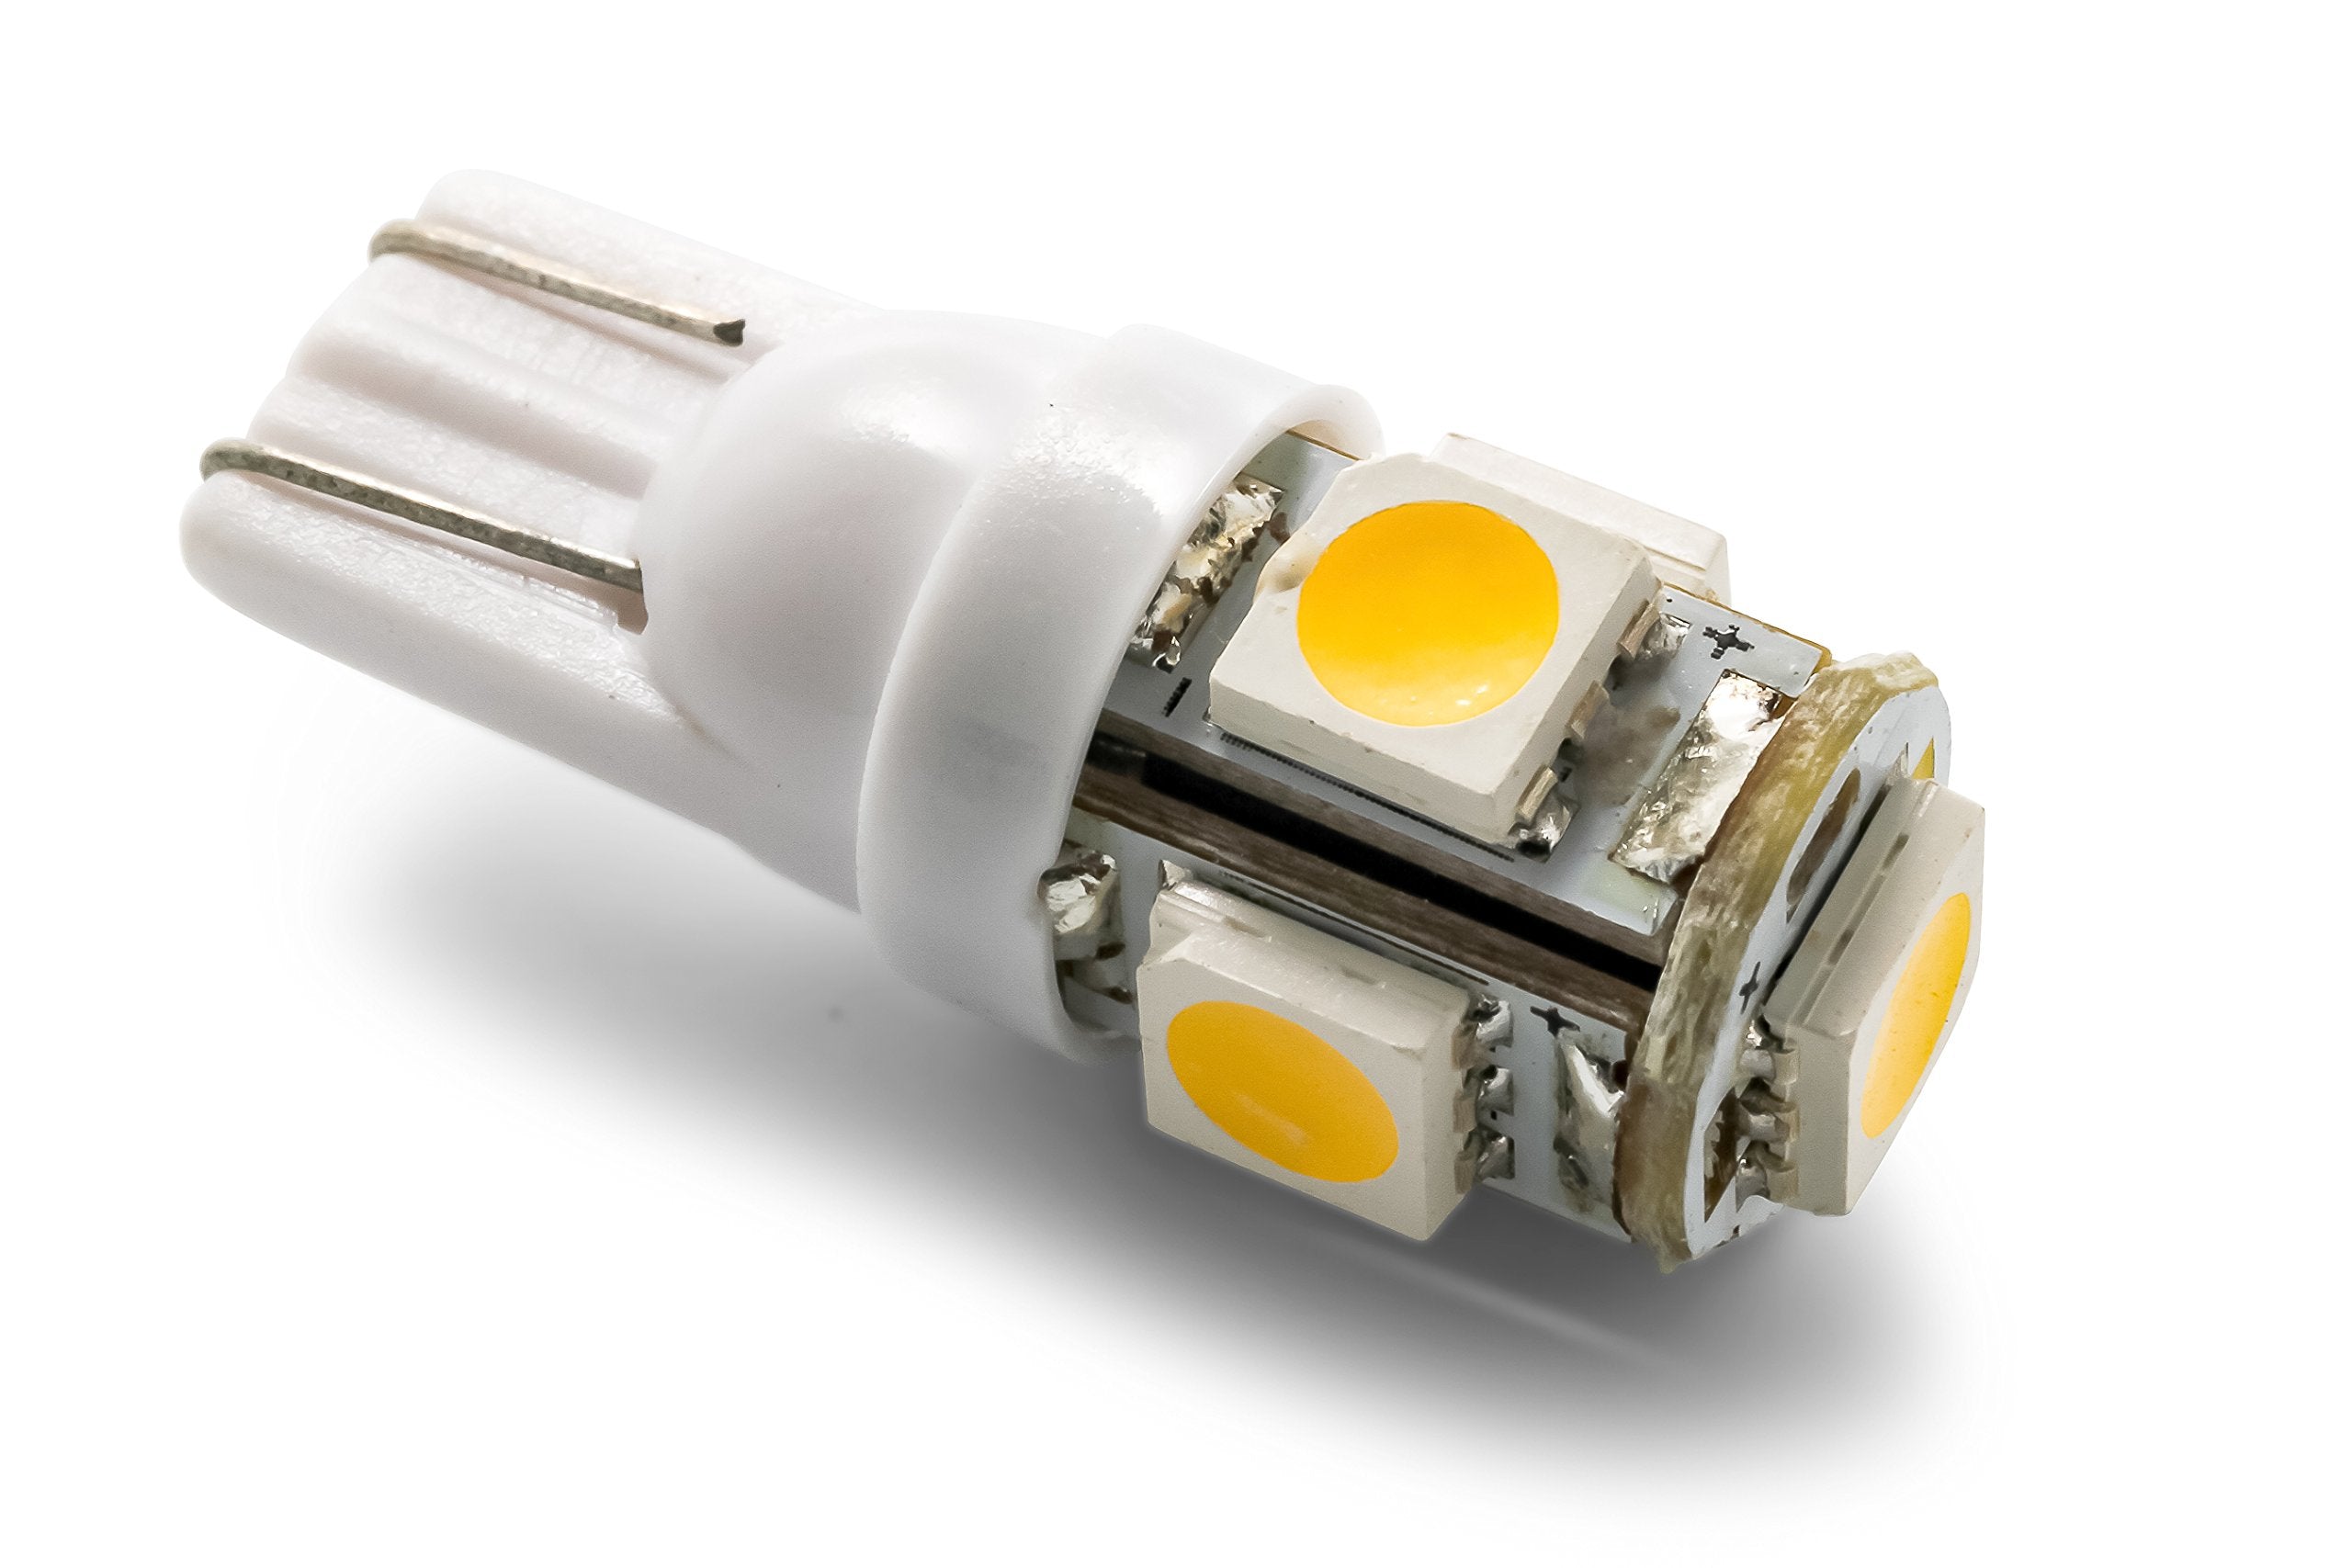 Camco 54621 LED - 194/906 (T10 Wedge) 5-LED 60lm, BrightWhite (E/F)